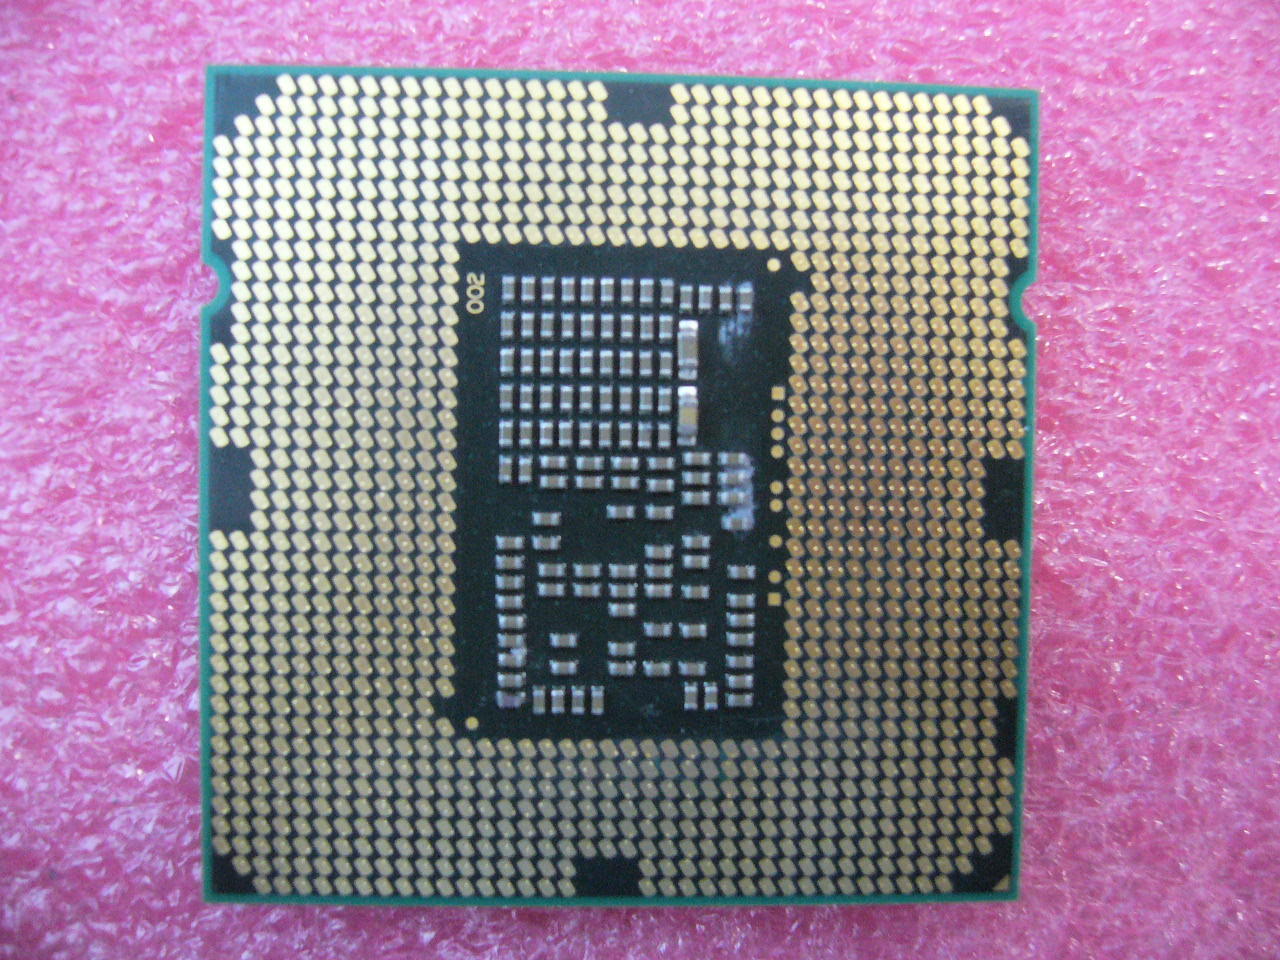 QTY 1x INTEL i3-560 Dual Core CPU 3.33GHZ/4MB LGA1156 SLBY2 - Click Image to Close